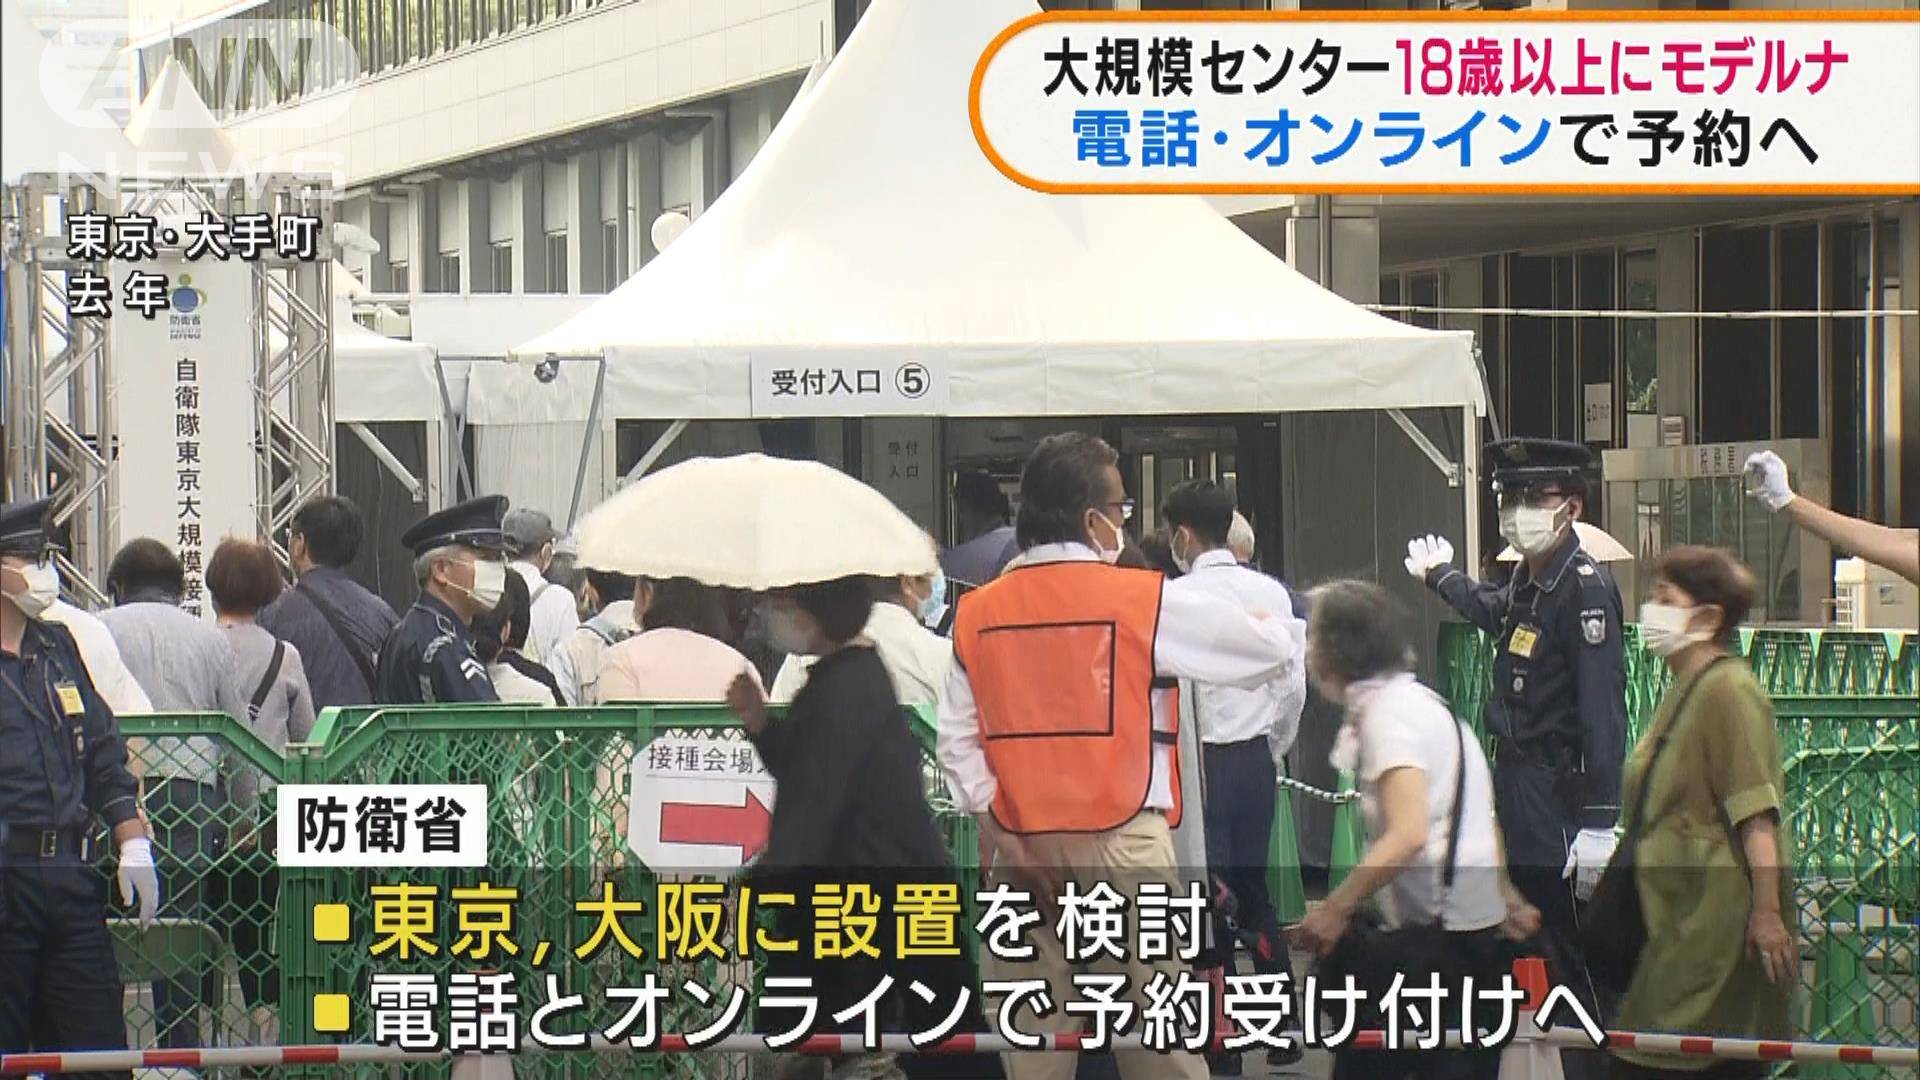 大 接種 町 自衛隊 大手 会場 規模 自衛隊東京大規模接種センターキャンセル待ちを取った技を公開します！